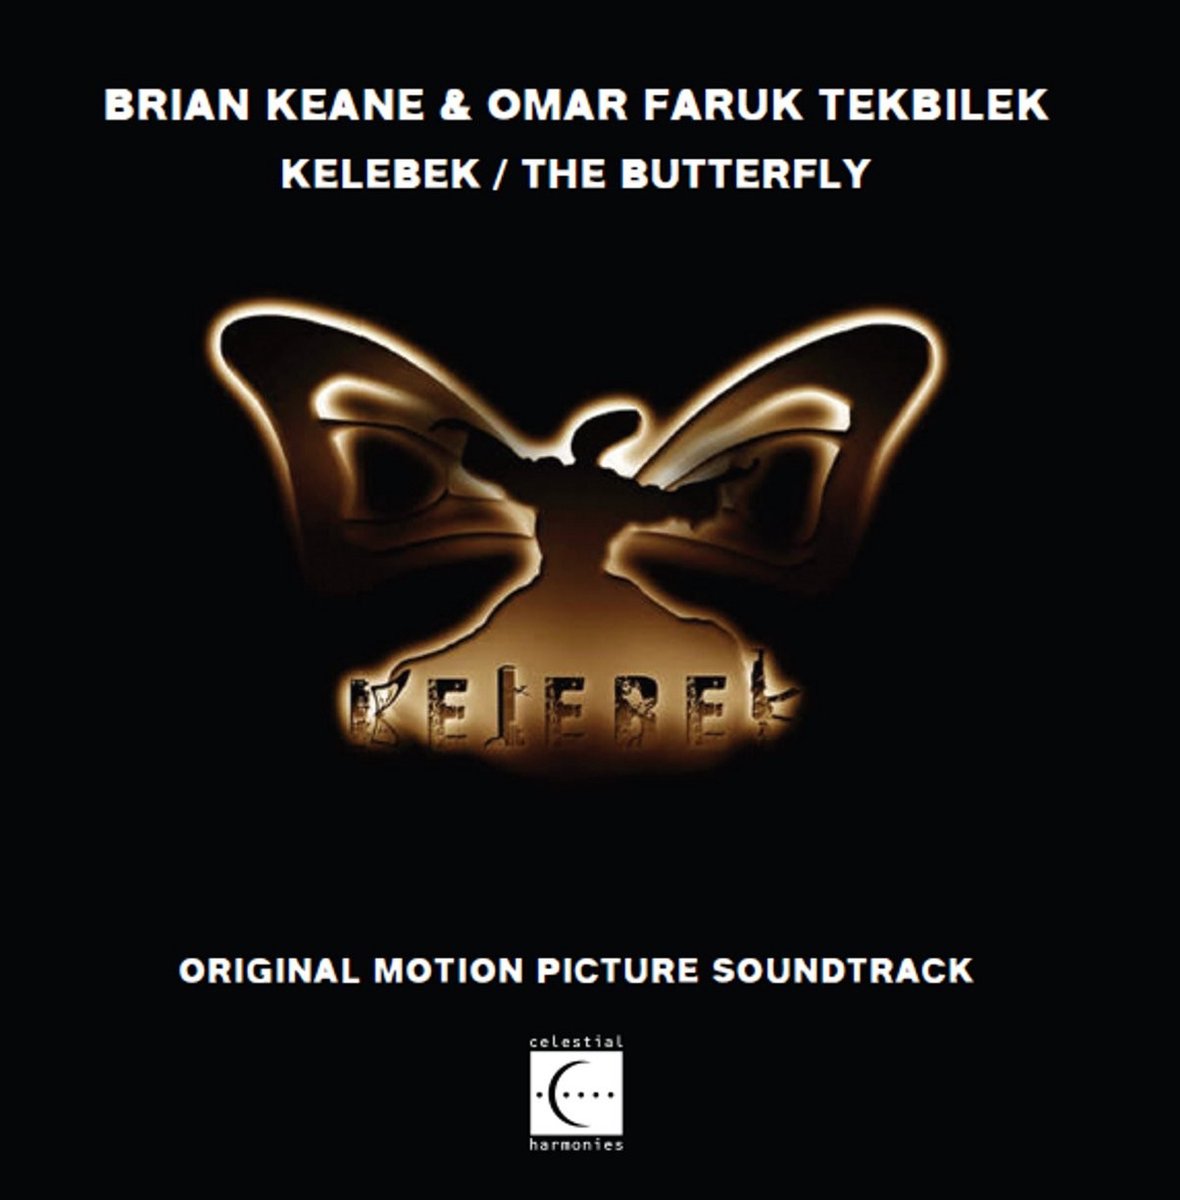 Brian Keane & Omar Faruk Tekbilek - Kelebek. The Butterfly (CD) - Brian Keane & Omar Faruk Tekbilek